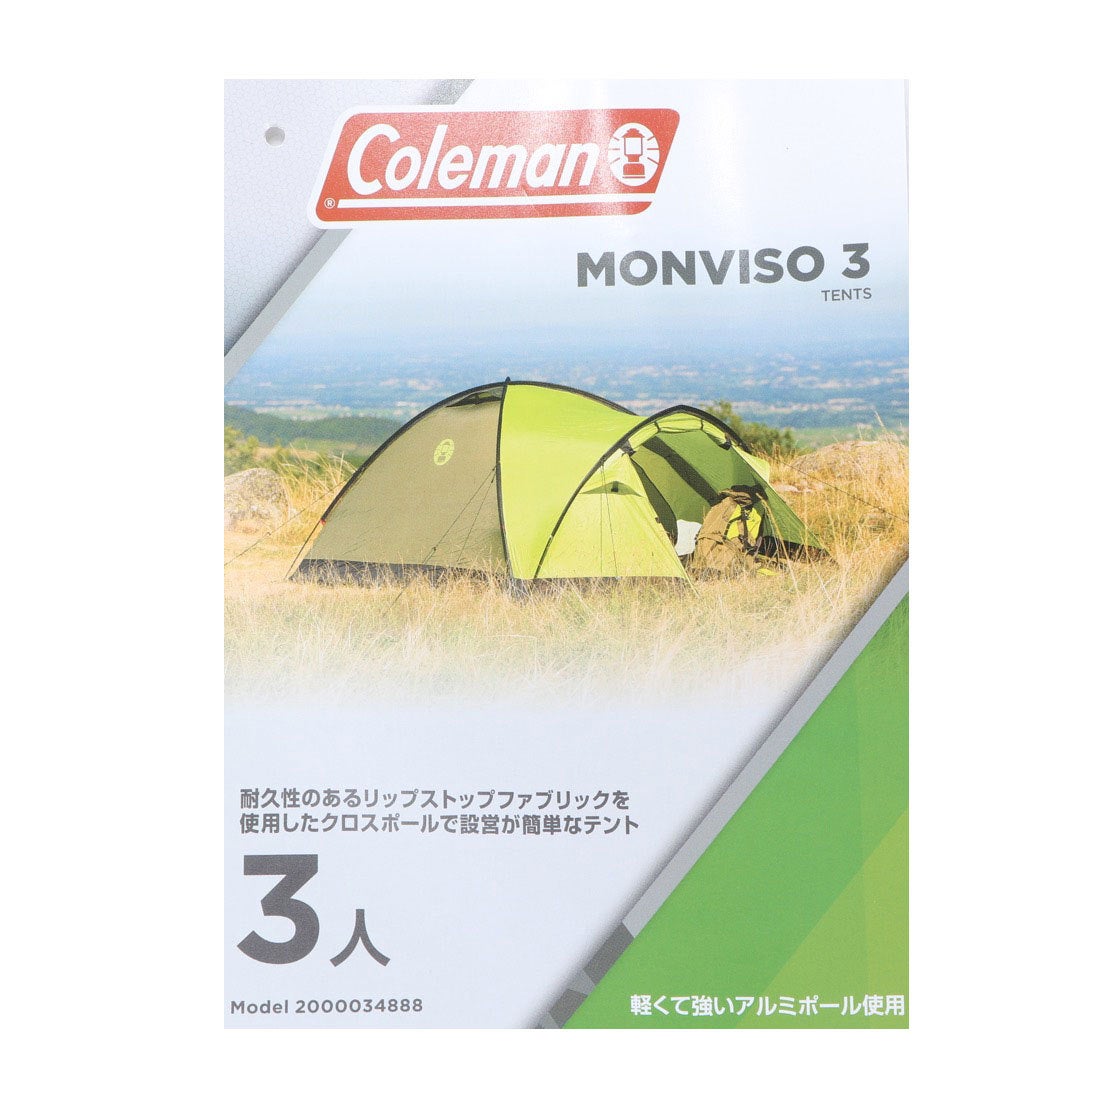 colemanドームテント モーンヴィーゾ3